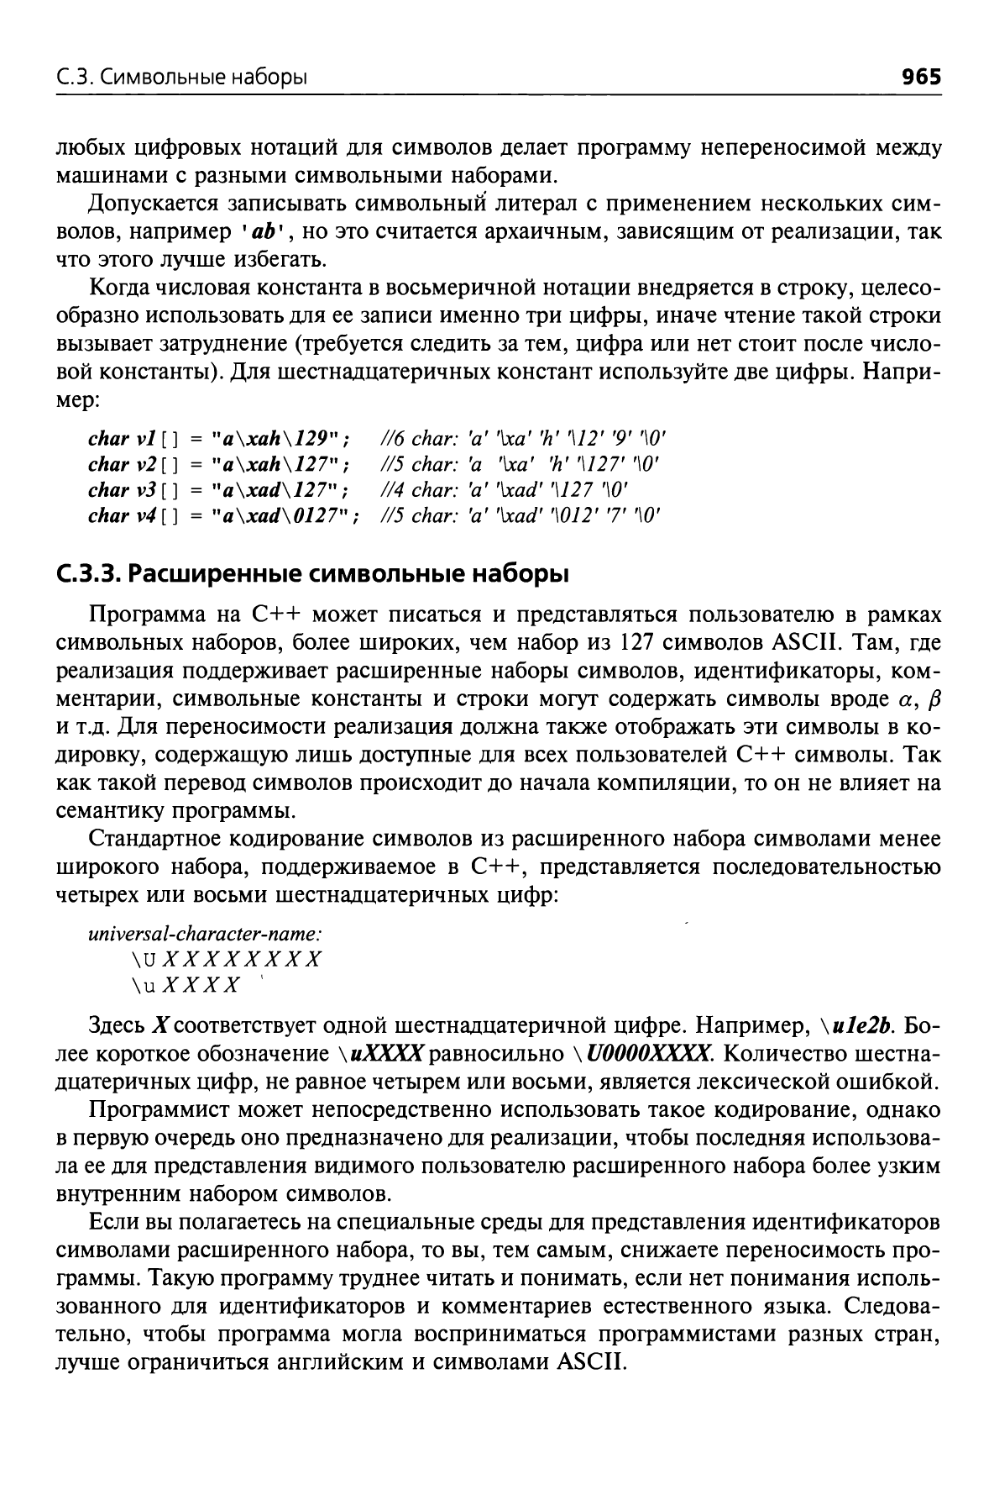 С.3.3. Расширенные символьные наборы